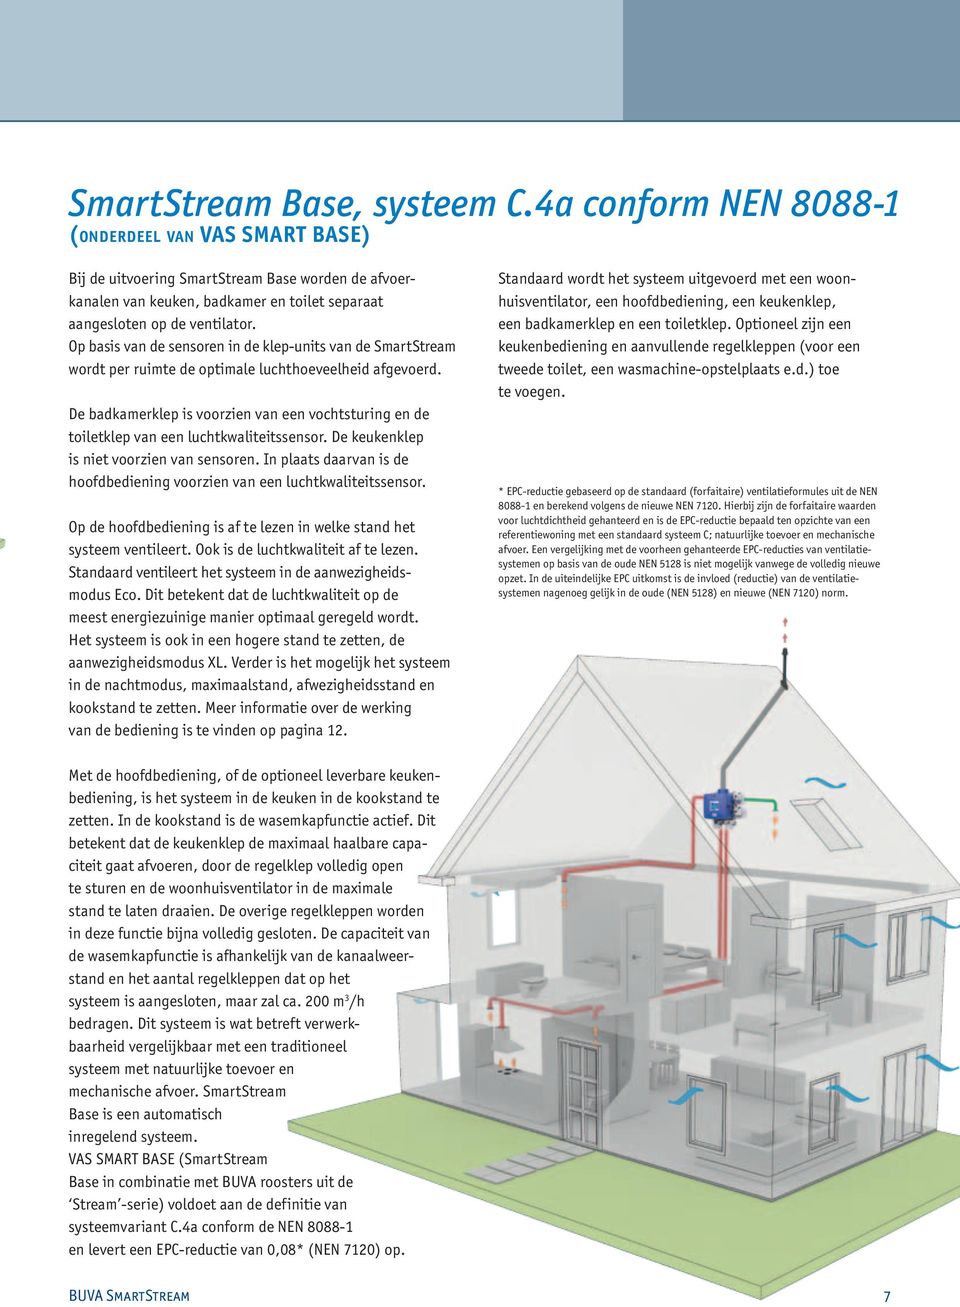 Op basis van de sensoren in de klep-units van de SmartStream wordt per ruimte de optimale luchthoeveelheid afgevoerd.